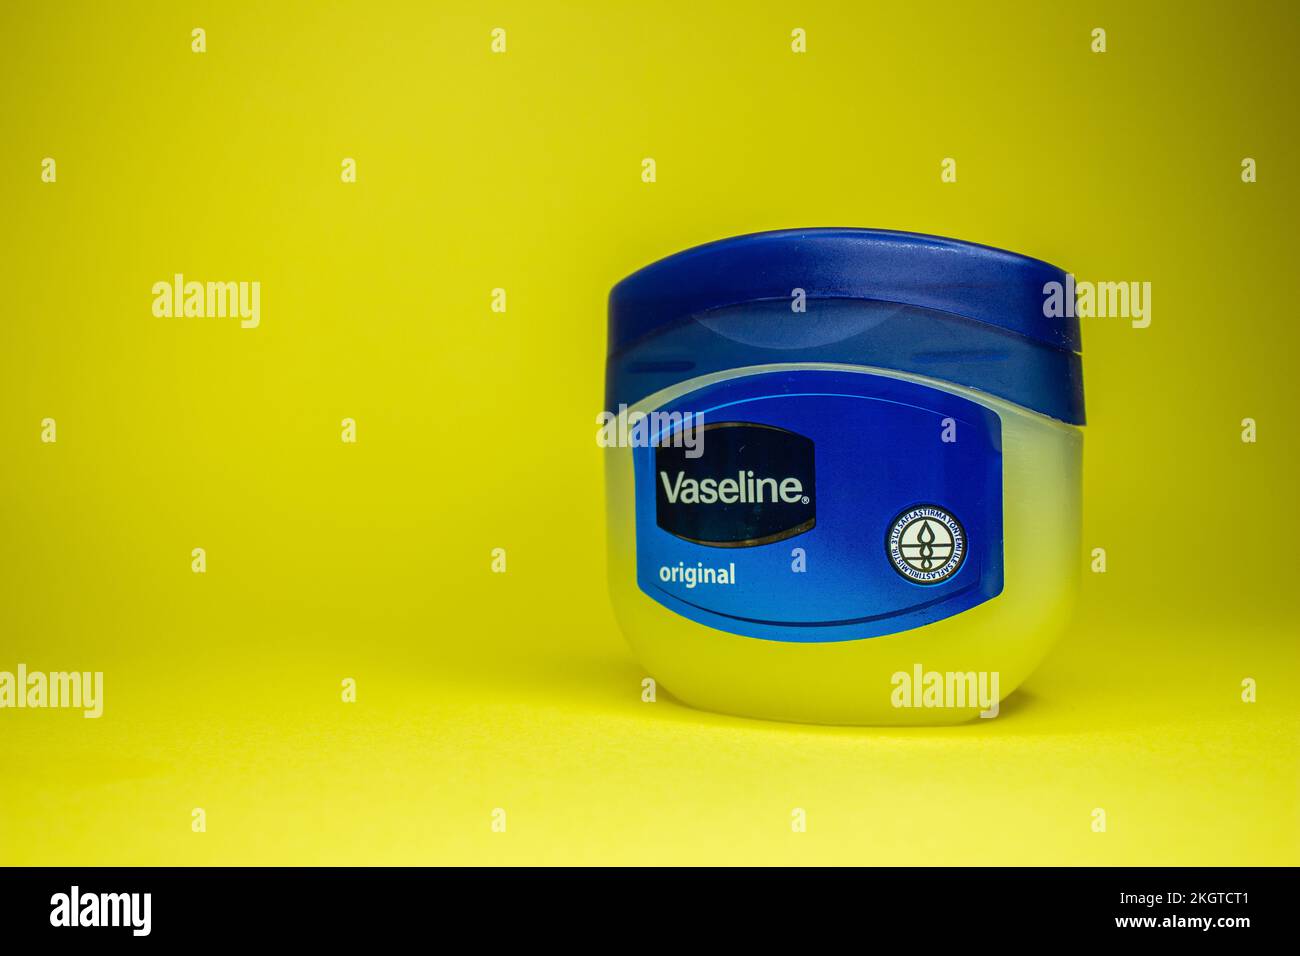 Vaseline-Flasche auf gelbem Hintergrund. Hautpflegemittel Vaseline oder Vaseline. Afjonkarahisar, Türkei - 19. November 2022. Stockfoto